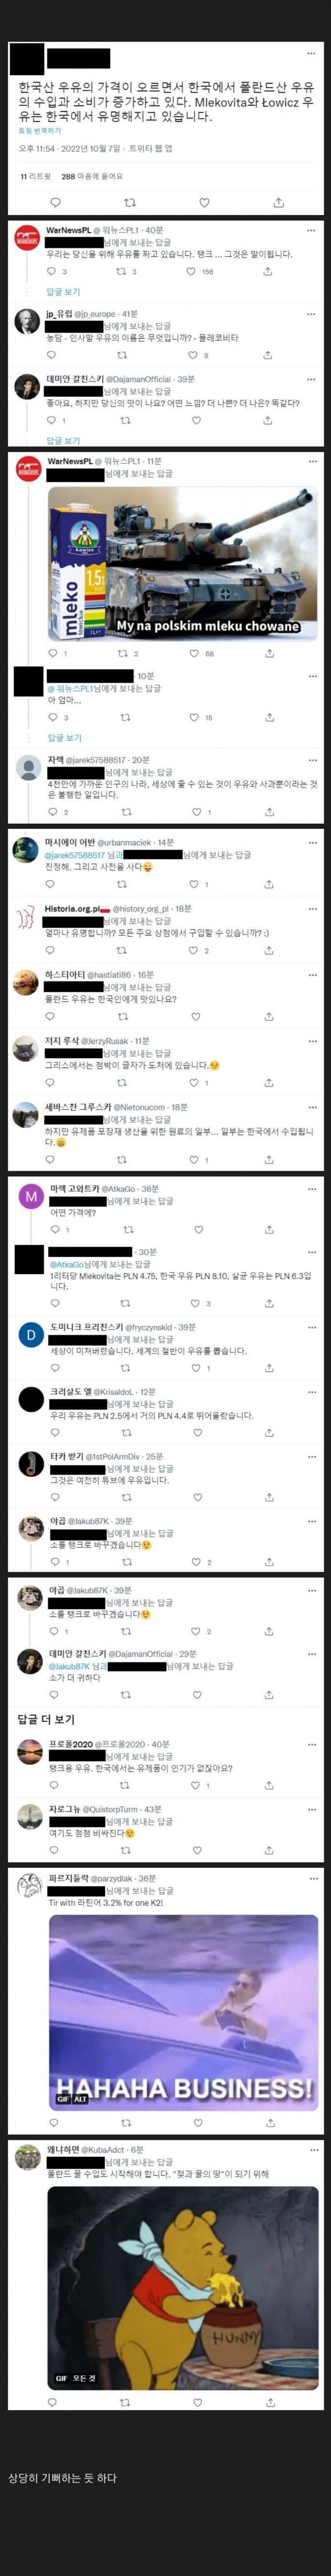 nokbeon.net-폴란드 우유가 한국에서 인기 있다는 걸 알게 된 폴란드 반응-1번 이미지